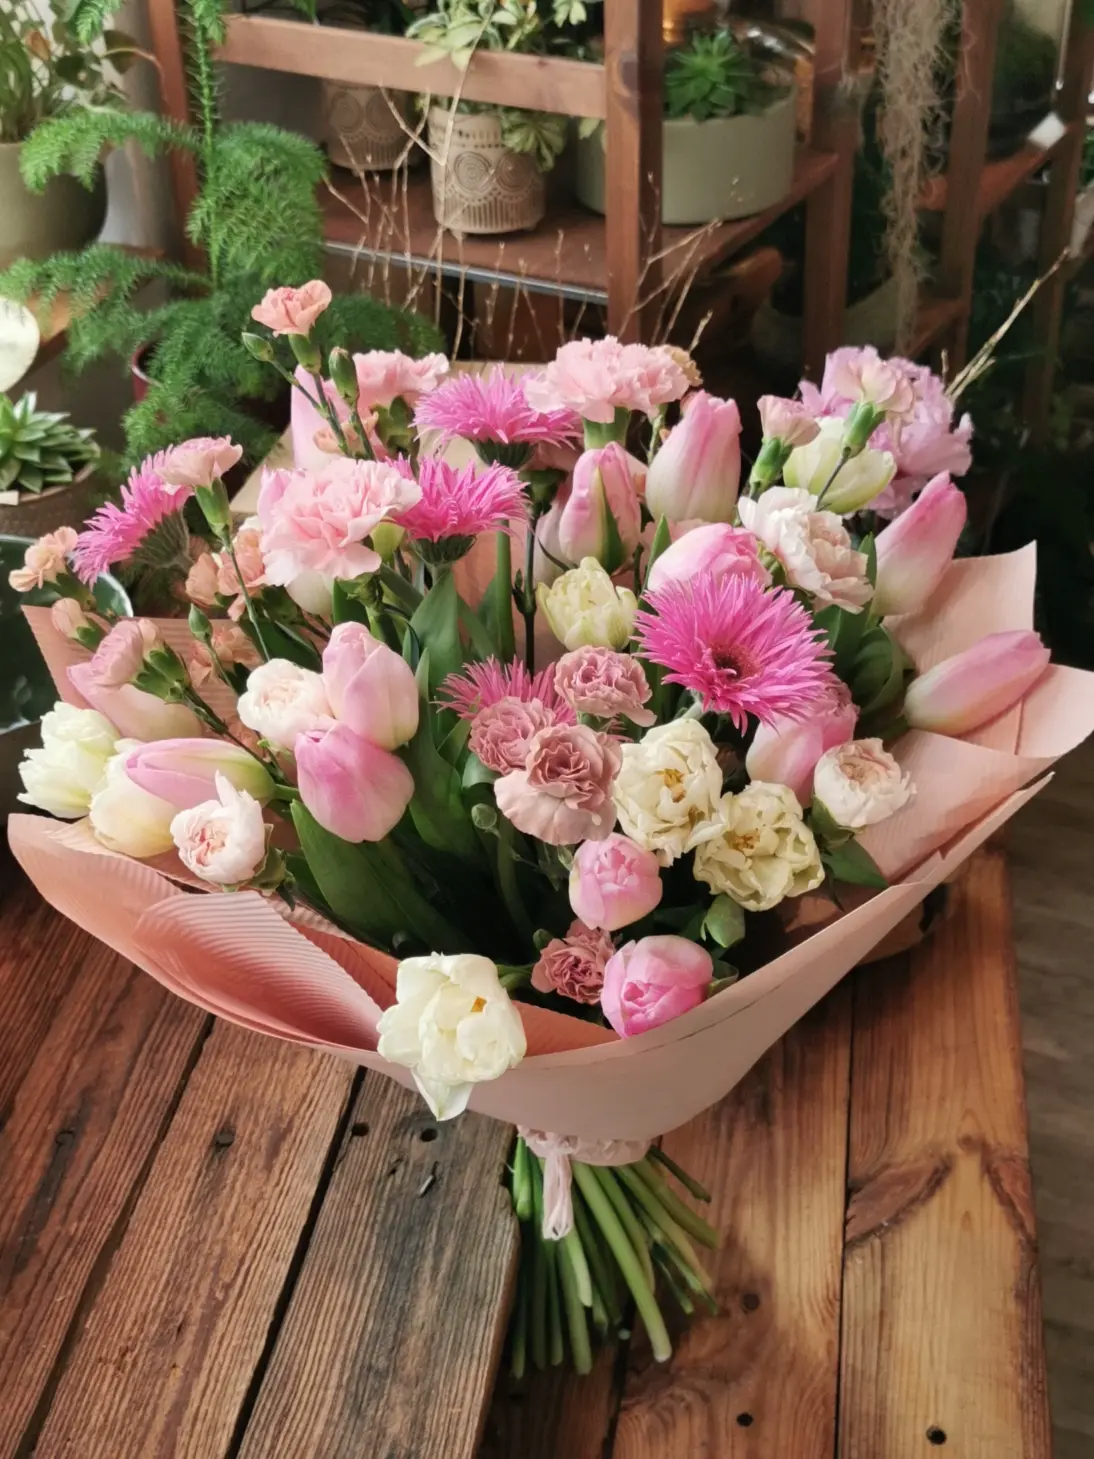 це прекрасна і витончена квіткова композиція, в якій домінують ніжні відтінки білого і рожевого.